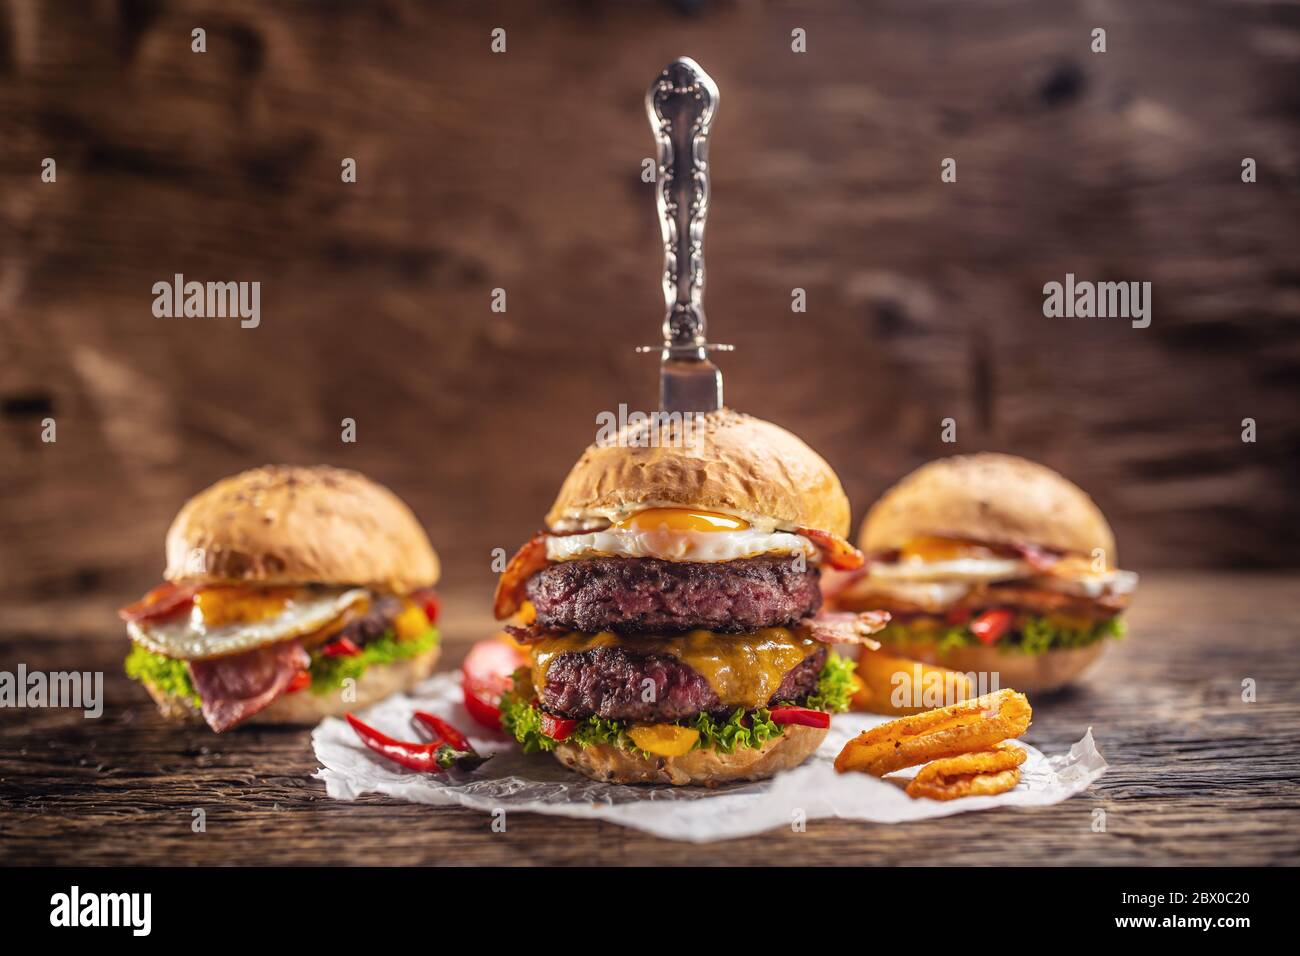 Ein Messer-Messer-Messer-Doppel-Rindfleisch-Burger mit Chips und Chili, mehr Burger im Rücken in einer dunklen Umgebung Stockfoto